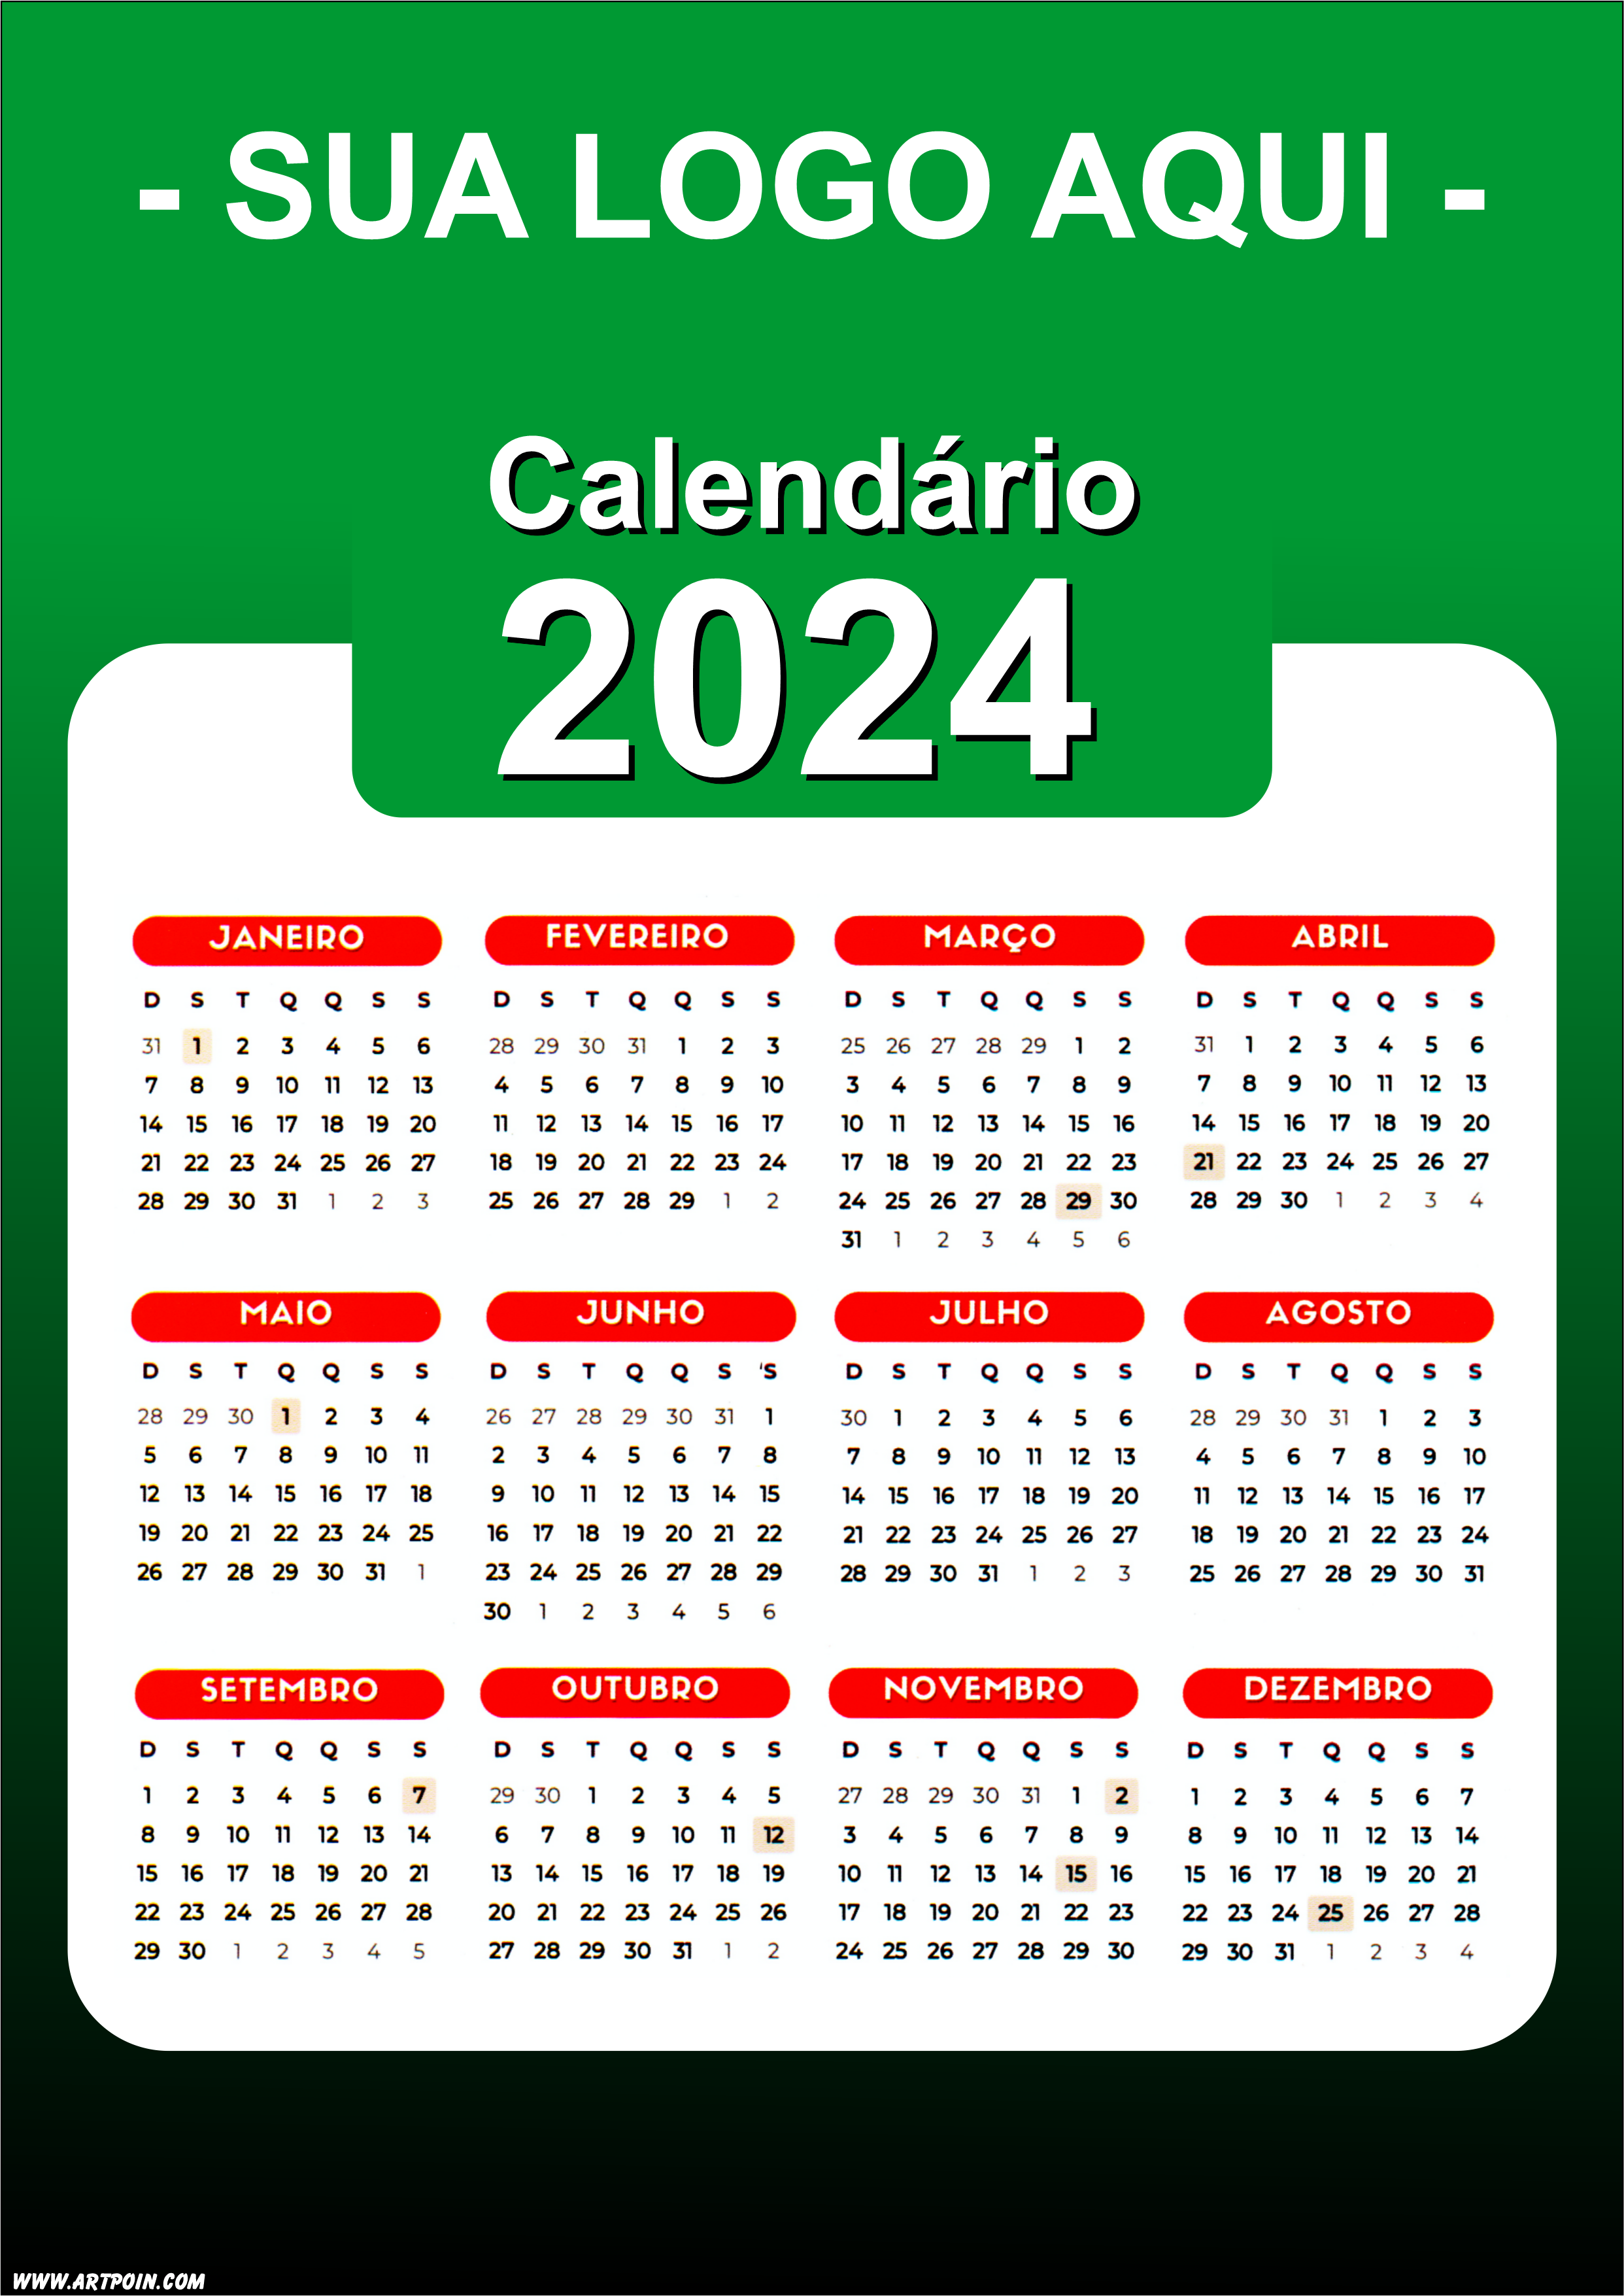 Calendário 2024 modelo verde para personalização com a logo da sua loja png